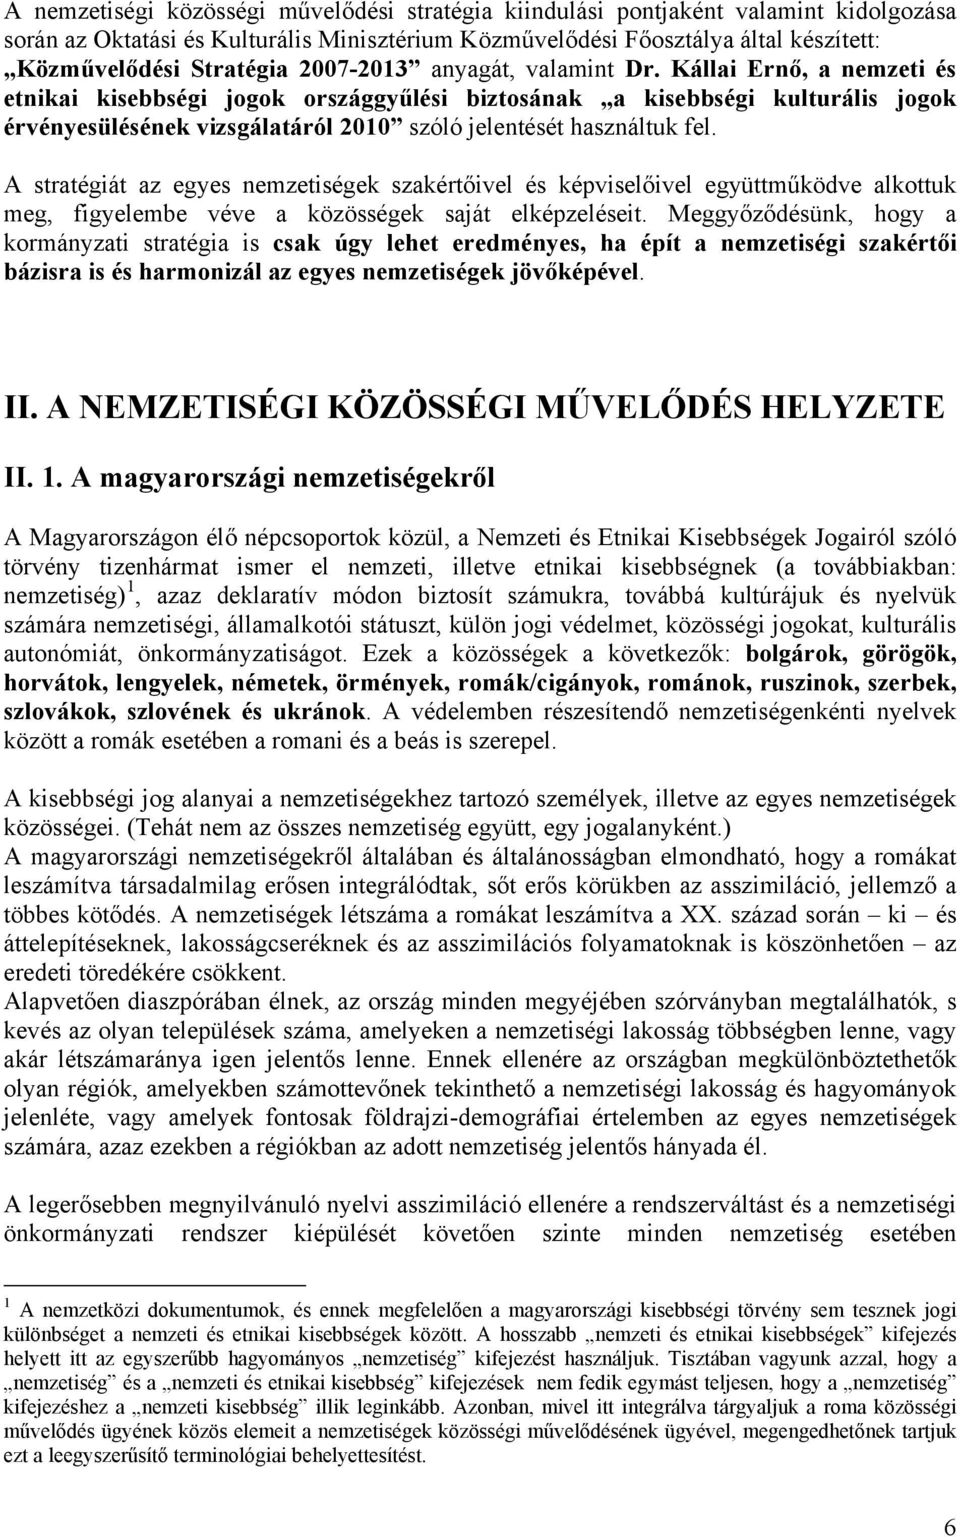 Kállai Ernő, a nemzeti és etnikai kisebbségi jogok országgyűlési biztosának a kisebbségi kulturális jogok érvényesülésének vizsgálatáról 2010 szóló jelentését használtuk fel.